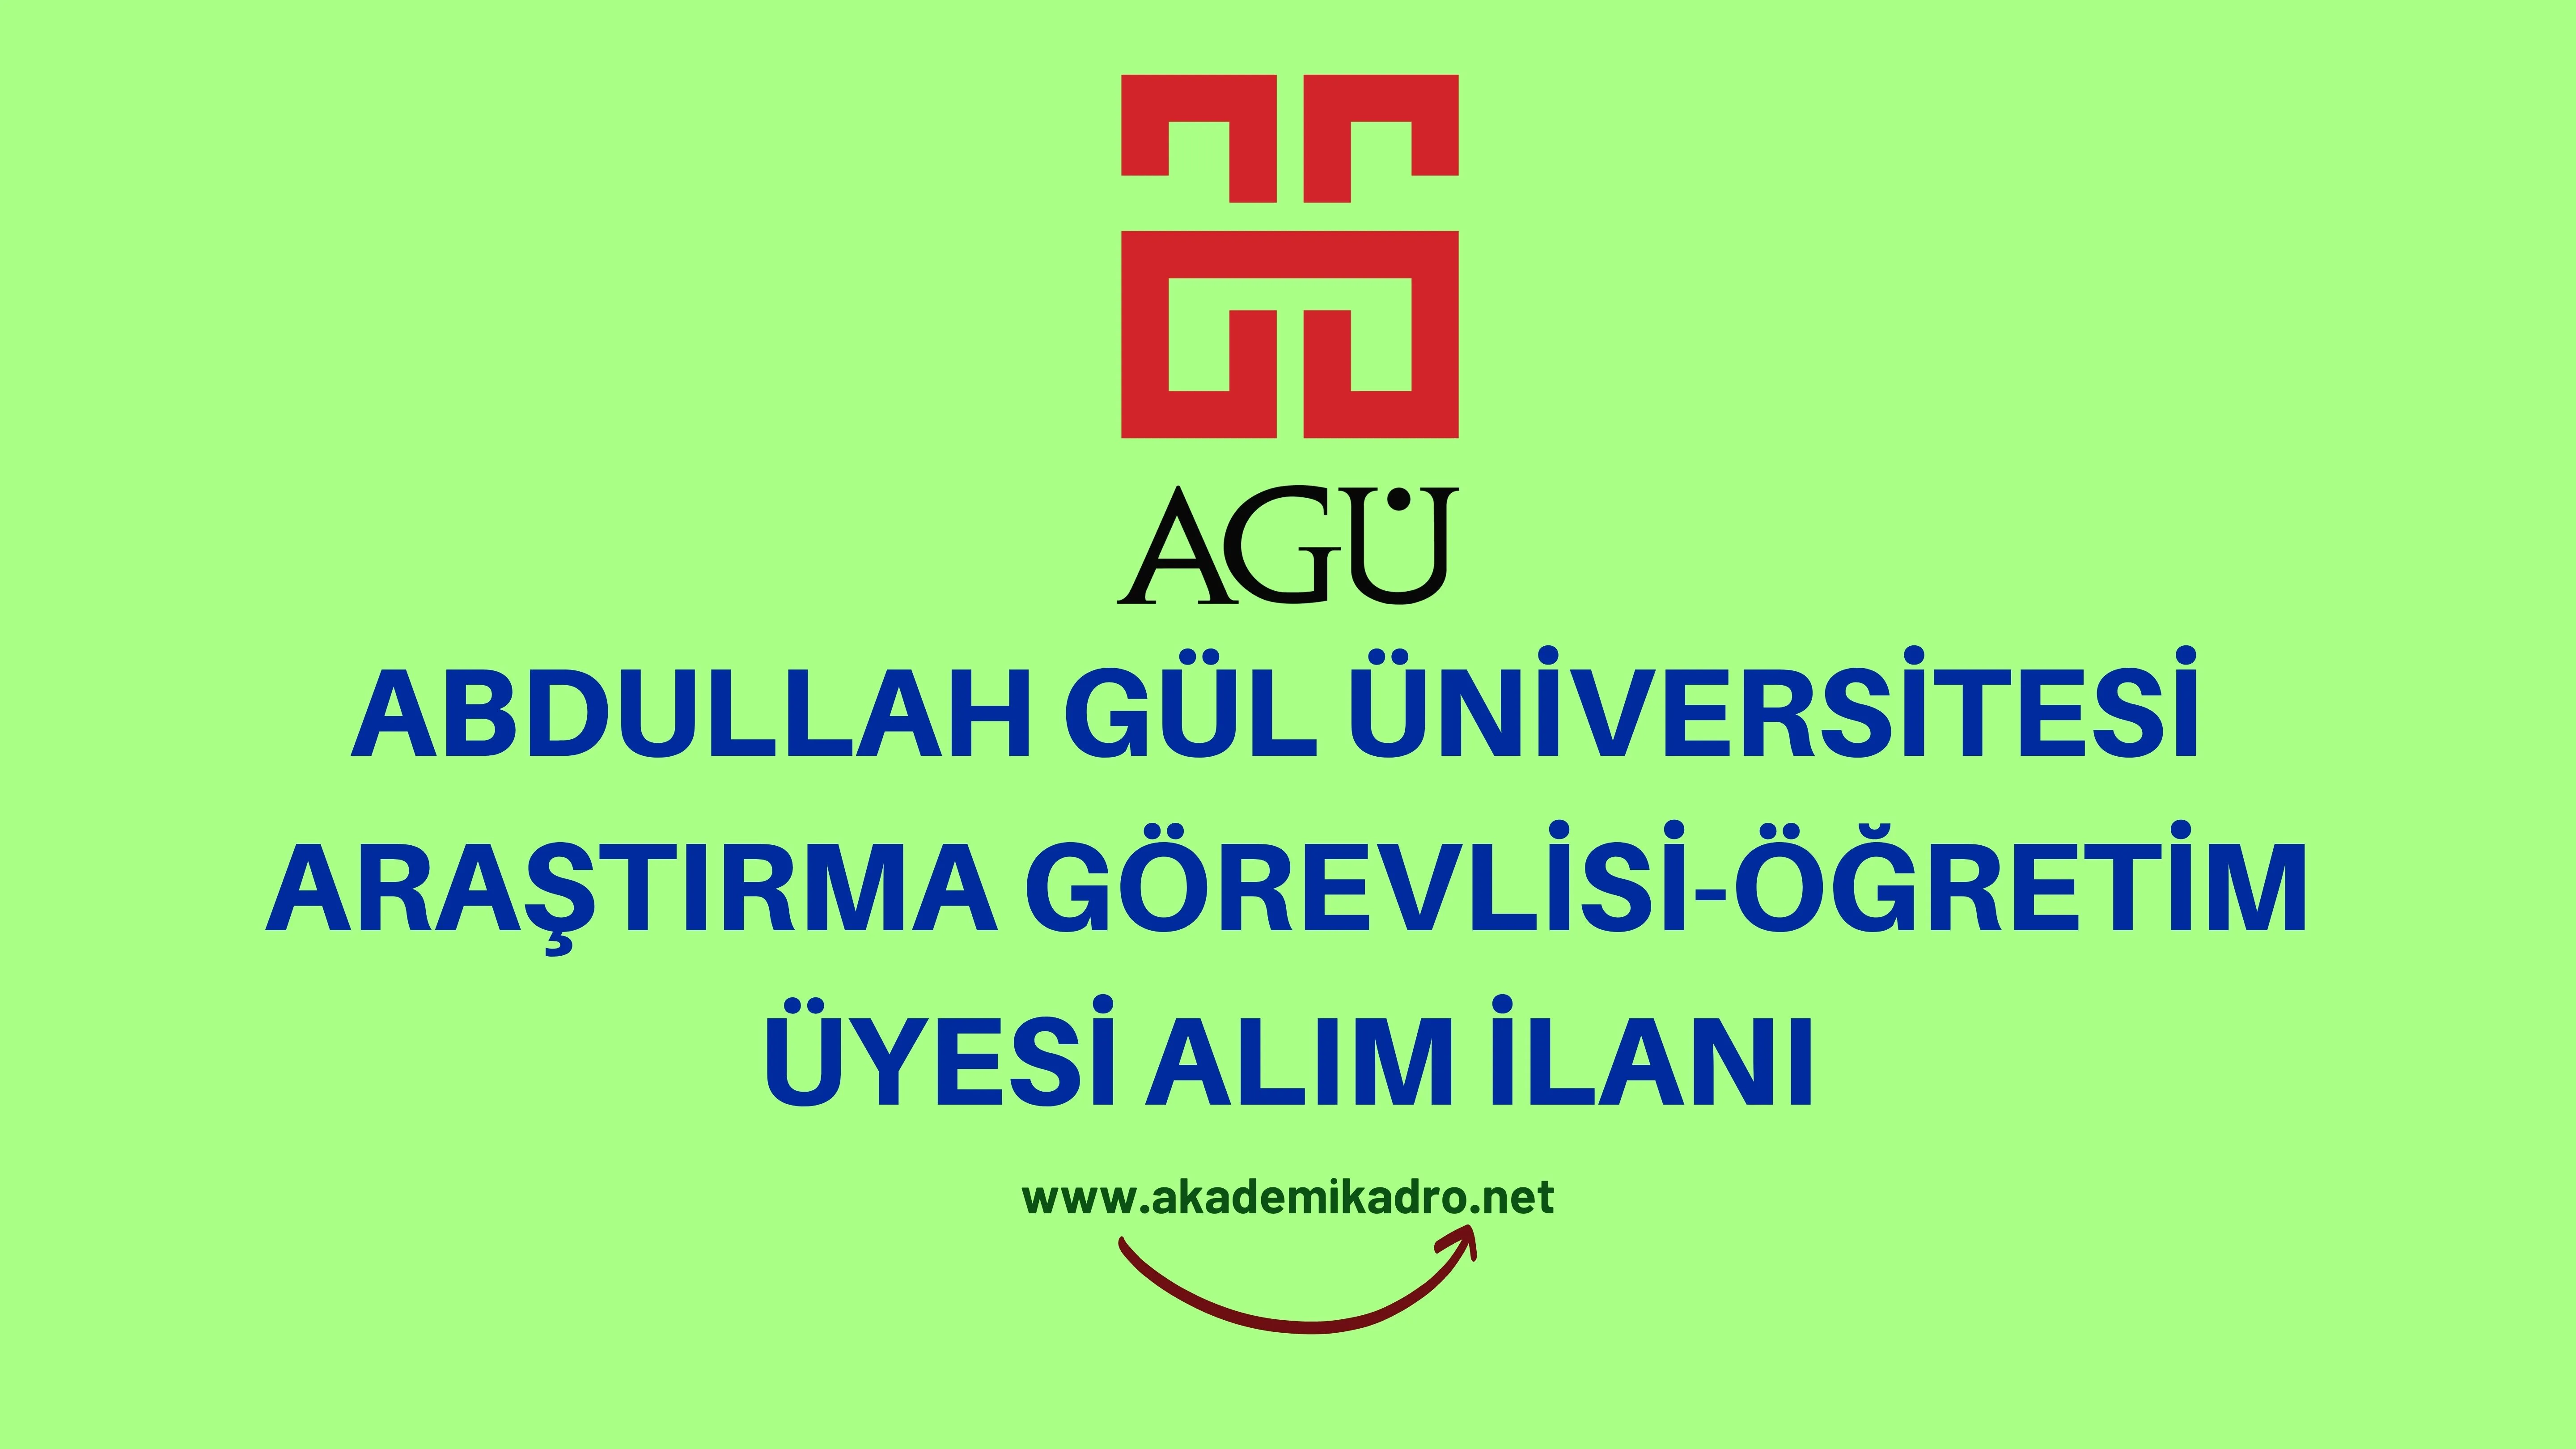 Abdullah Gül Üniversitesi Araştırma görevlisi alacaktır.